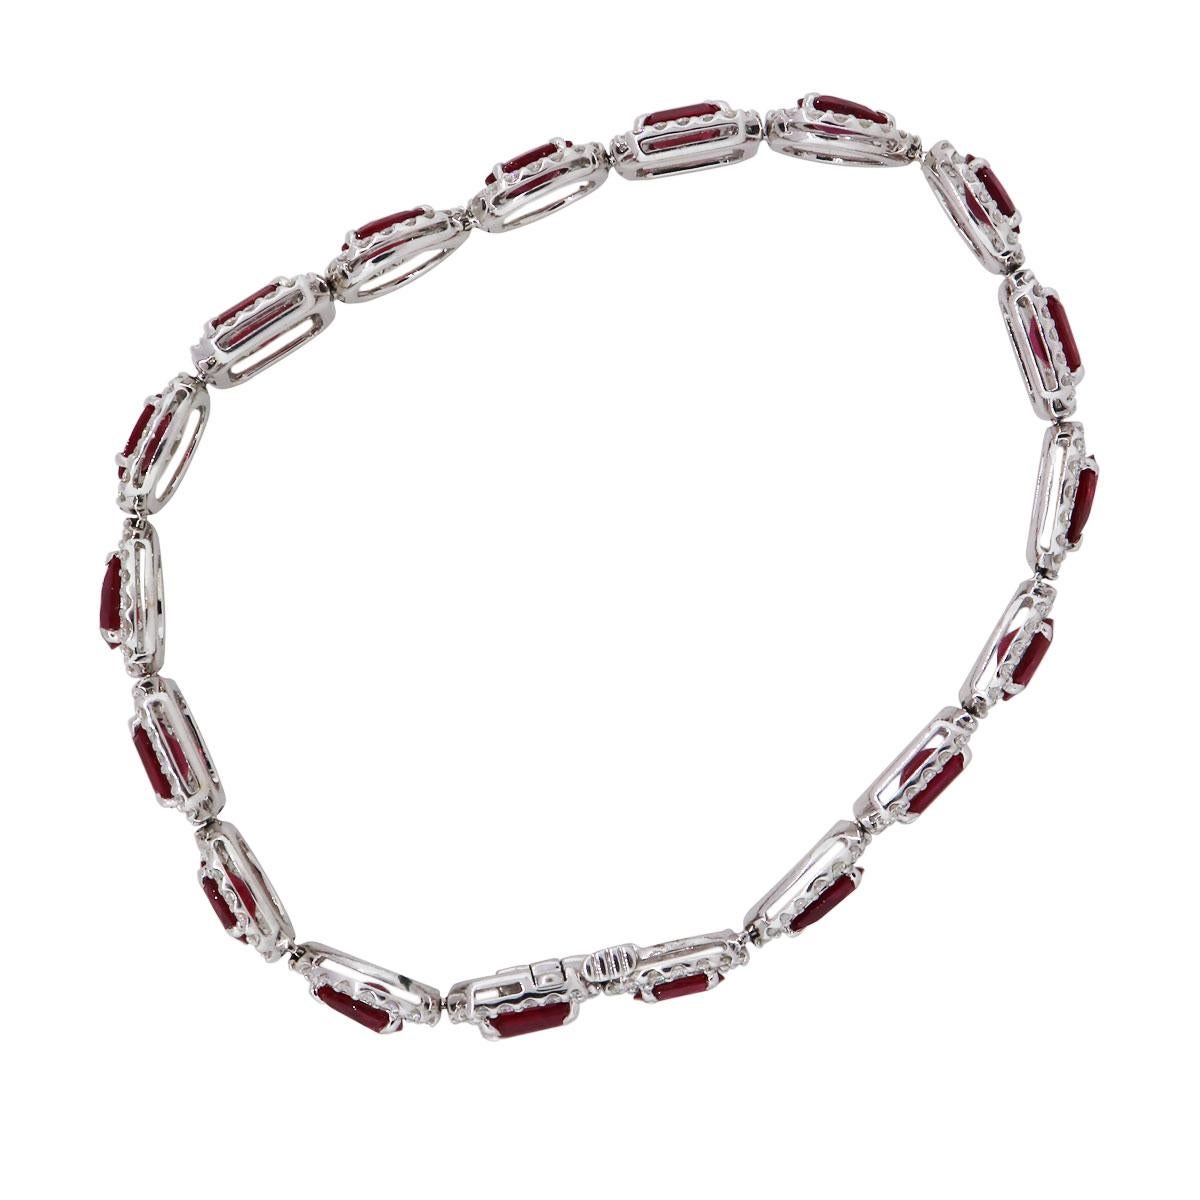 Oval Cut Ruby and Diamond Bracelet